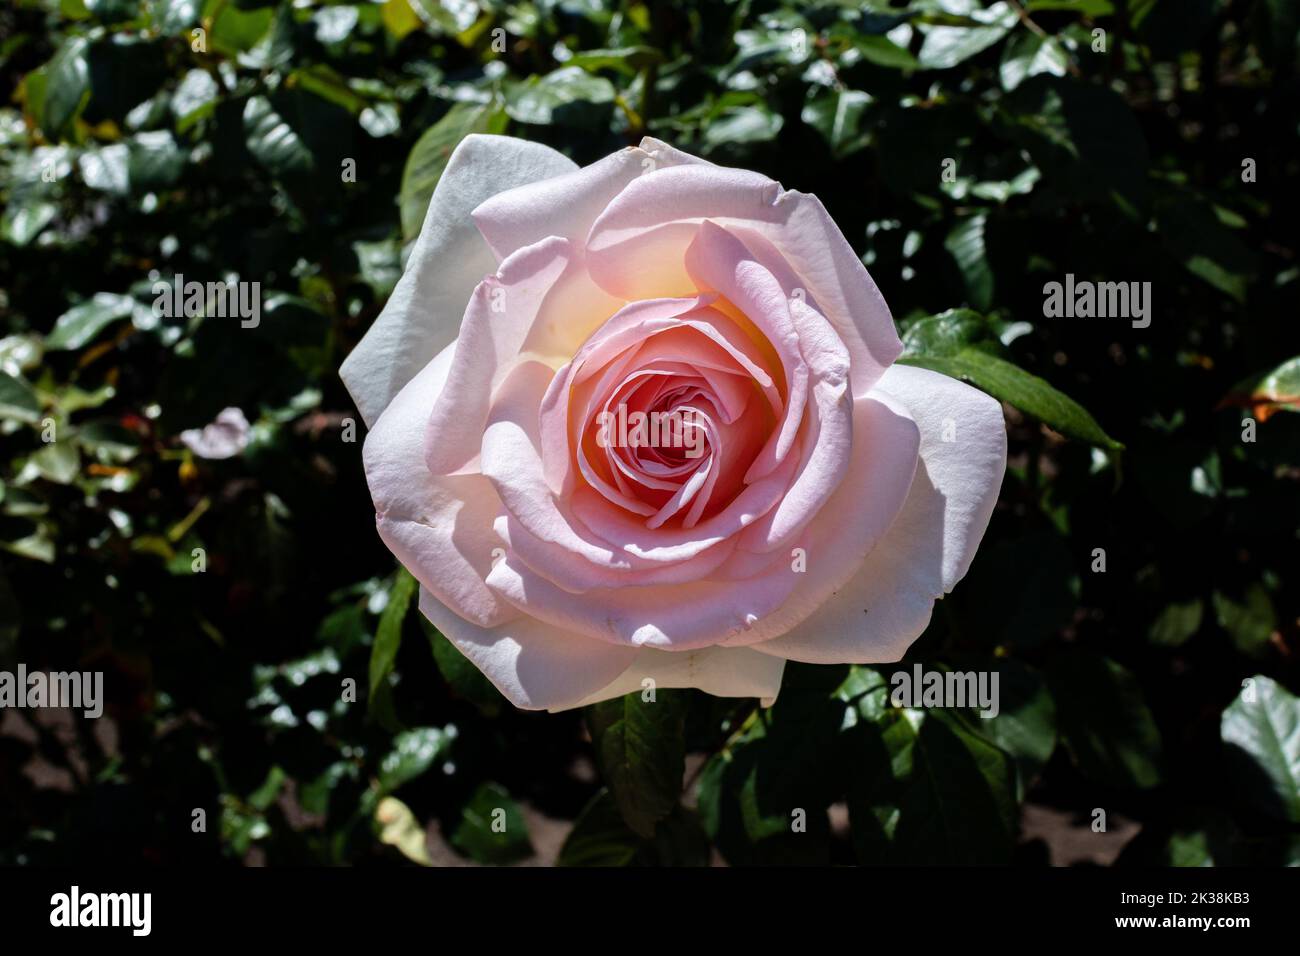 Cette rose rose rose et blanche se distingue par sa pleine floraison. Banque D'Images